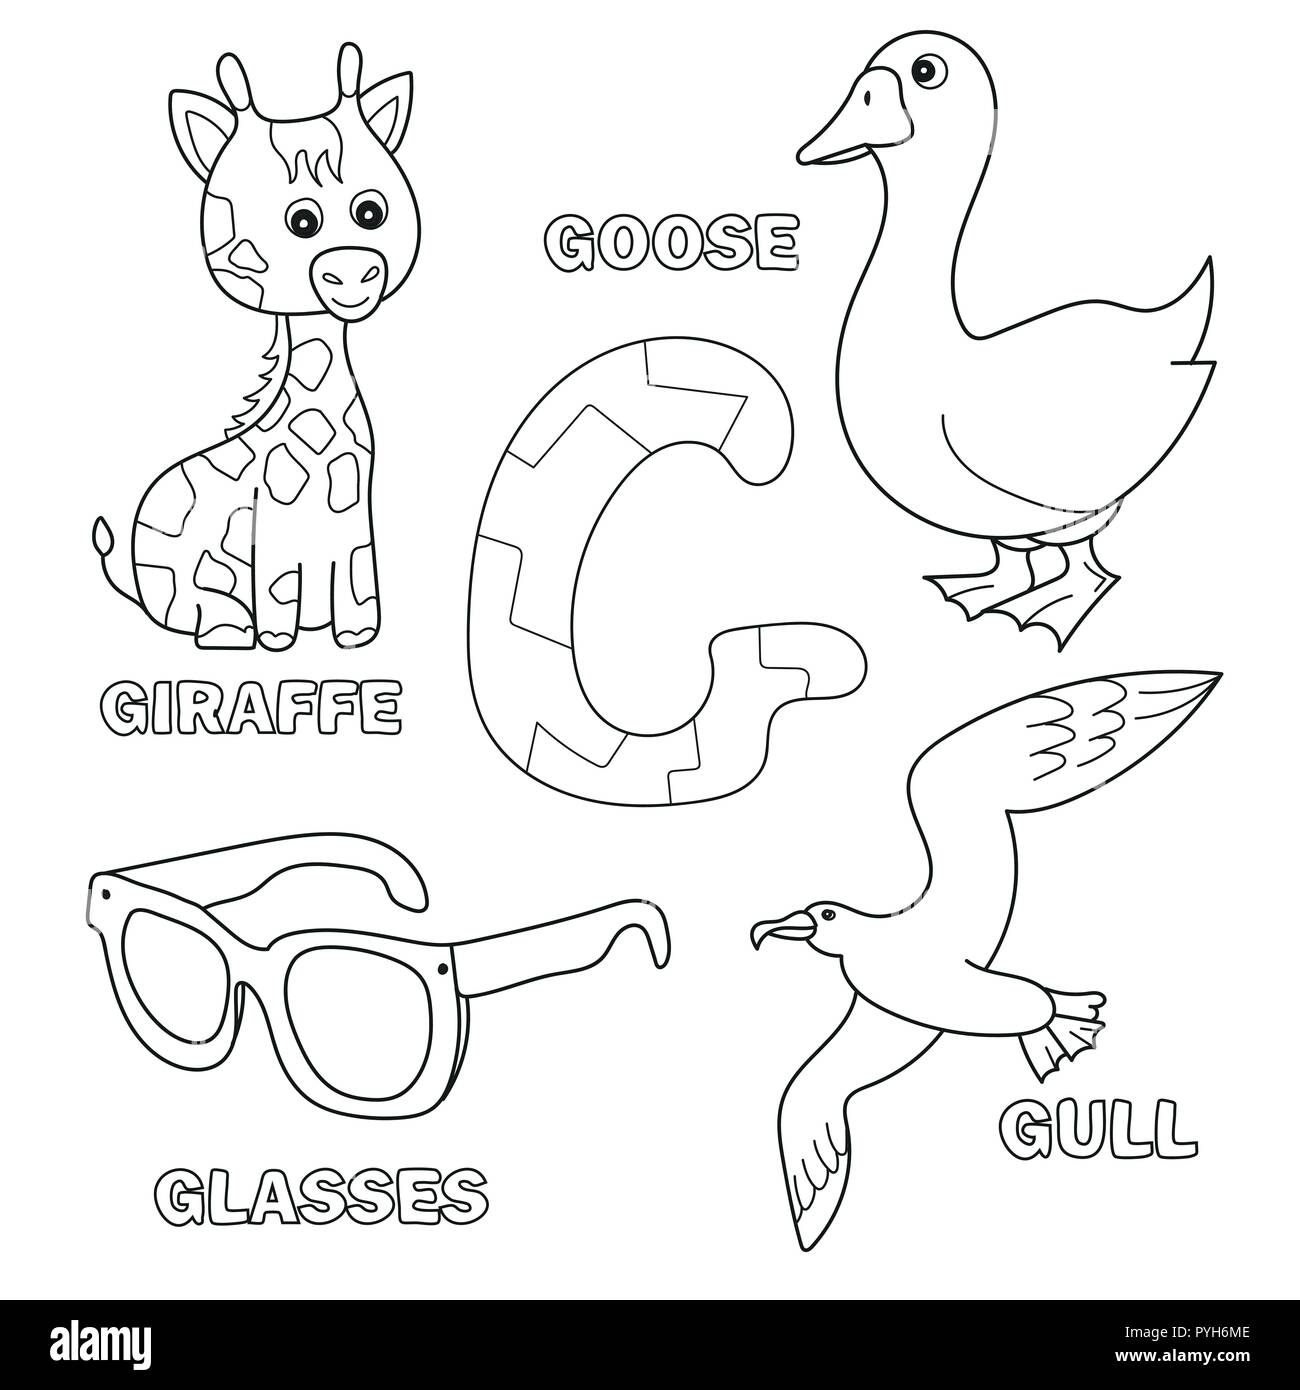 Cute giraffe, goose, glasses, gull for letter G in kids alphabet Stock Vector